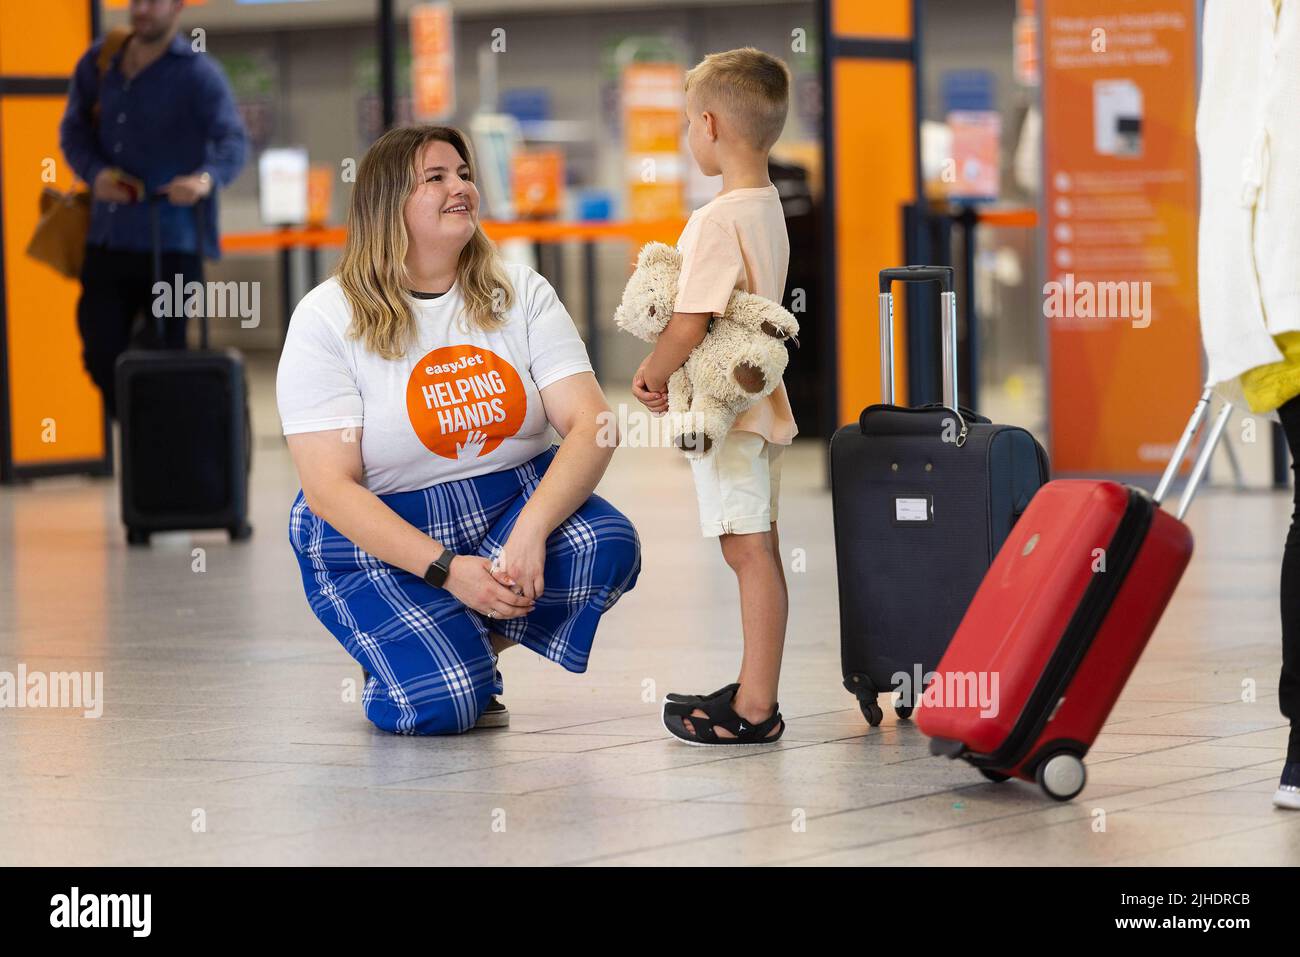 Cleo Greaves, asistente de atención al cliente de easyJet, ayuda a una familia joven en el aeropuerto de Luton mientras la aerolínea lanza su nueva línea de atención al cliente familiar. Fecha de emisión: Lunes 18 de julio de 2022. Foto de stock